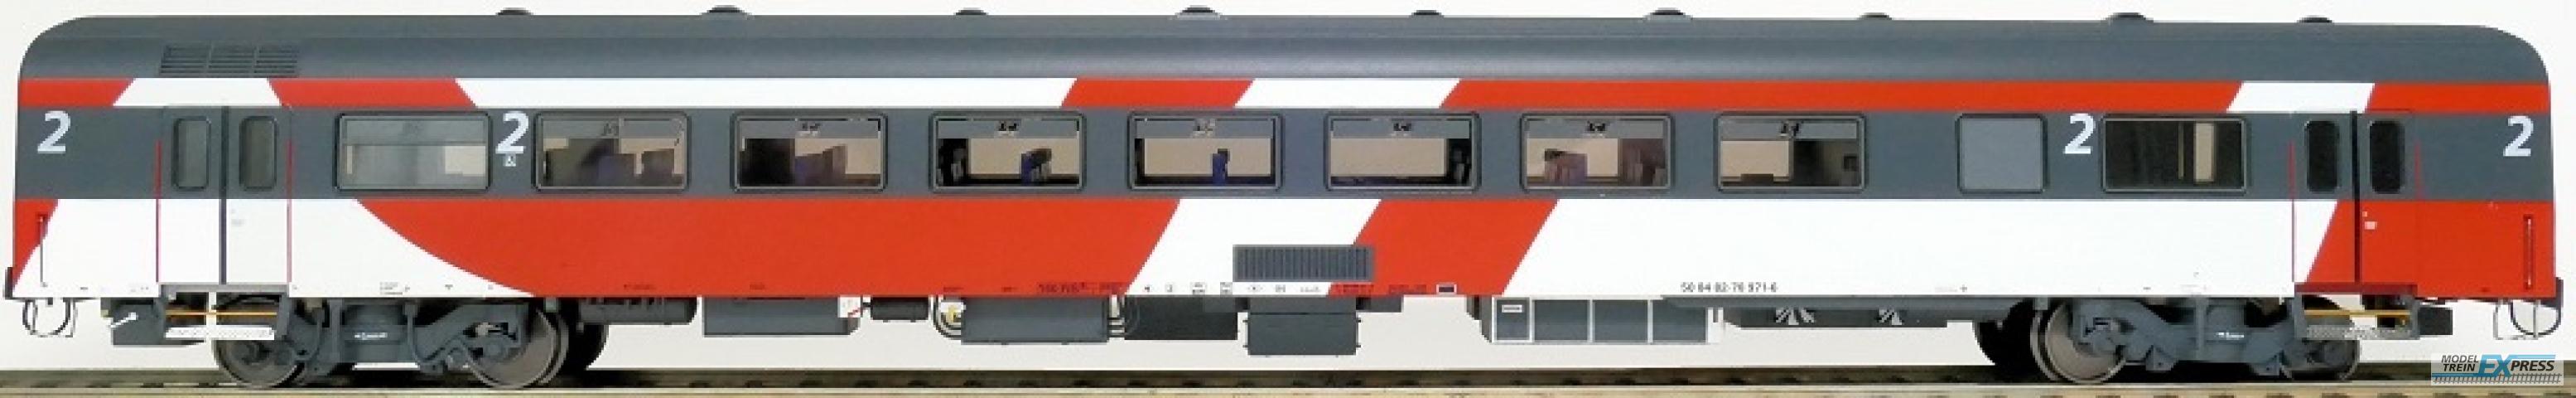 Exact-train 11143 NS ICRm Fyra 1 (Amsterdam - Brussel) für die Hsl-Strecke eingesetzt Gepäckwagen Bd(Rot/Rose/Weiss), Ep. VI